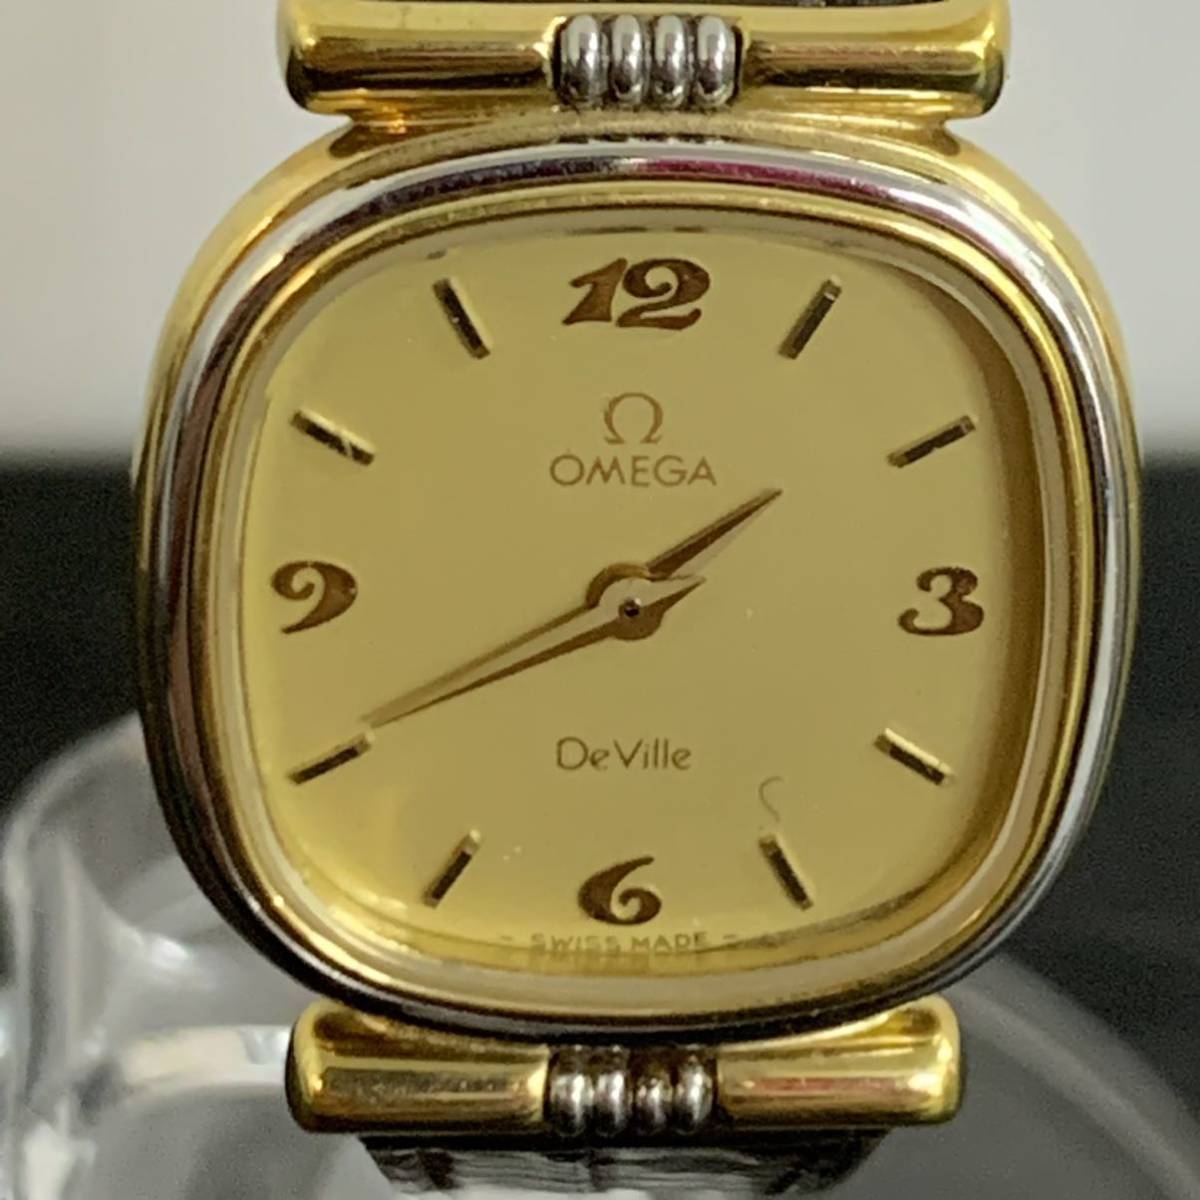 Z139 OMEGA オメガ De Ville デビル クォーツ腕時計 1387 ジャンク品